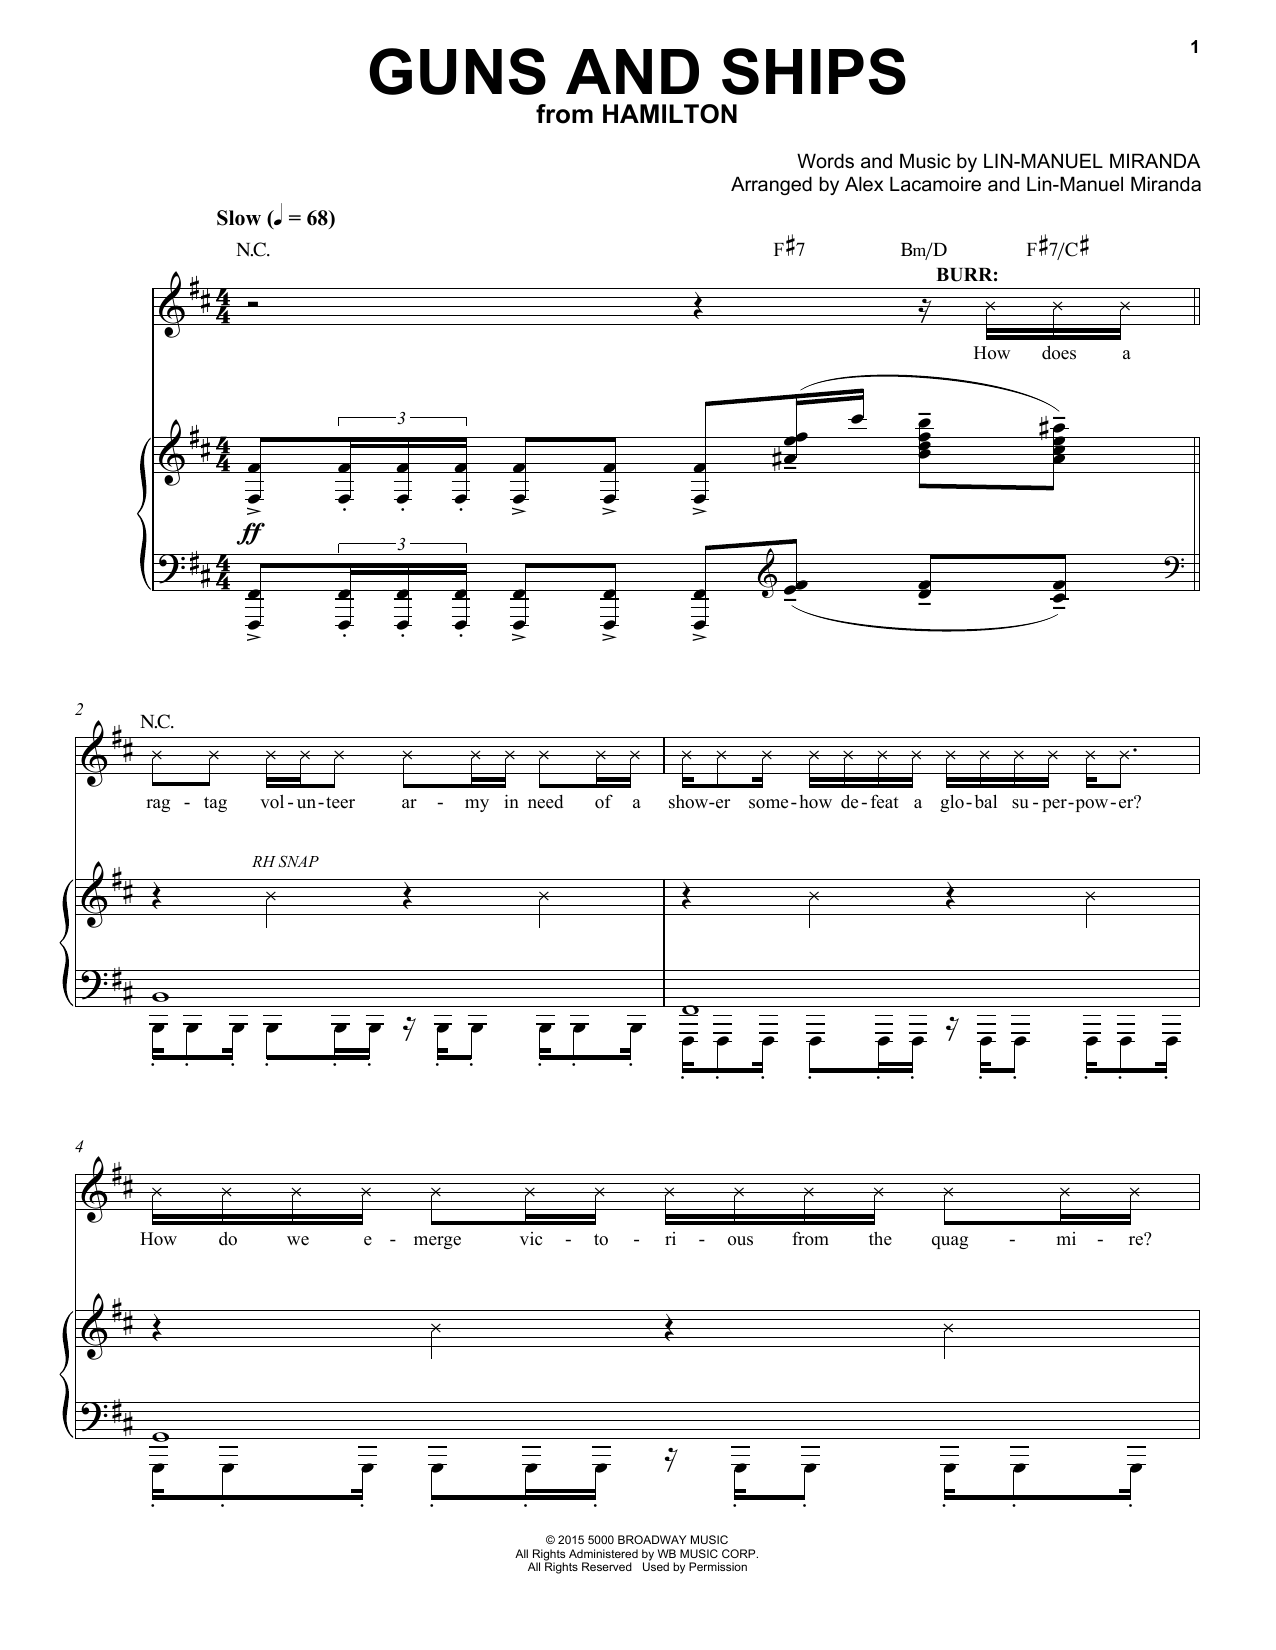 Lin-Manuel Miranda Guns And Ships (from Hamilton) Sheet Music Notes & Chords for Piano & Vocal - Download or Print PDF